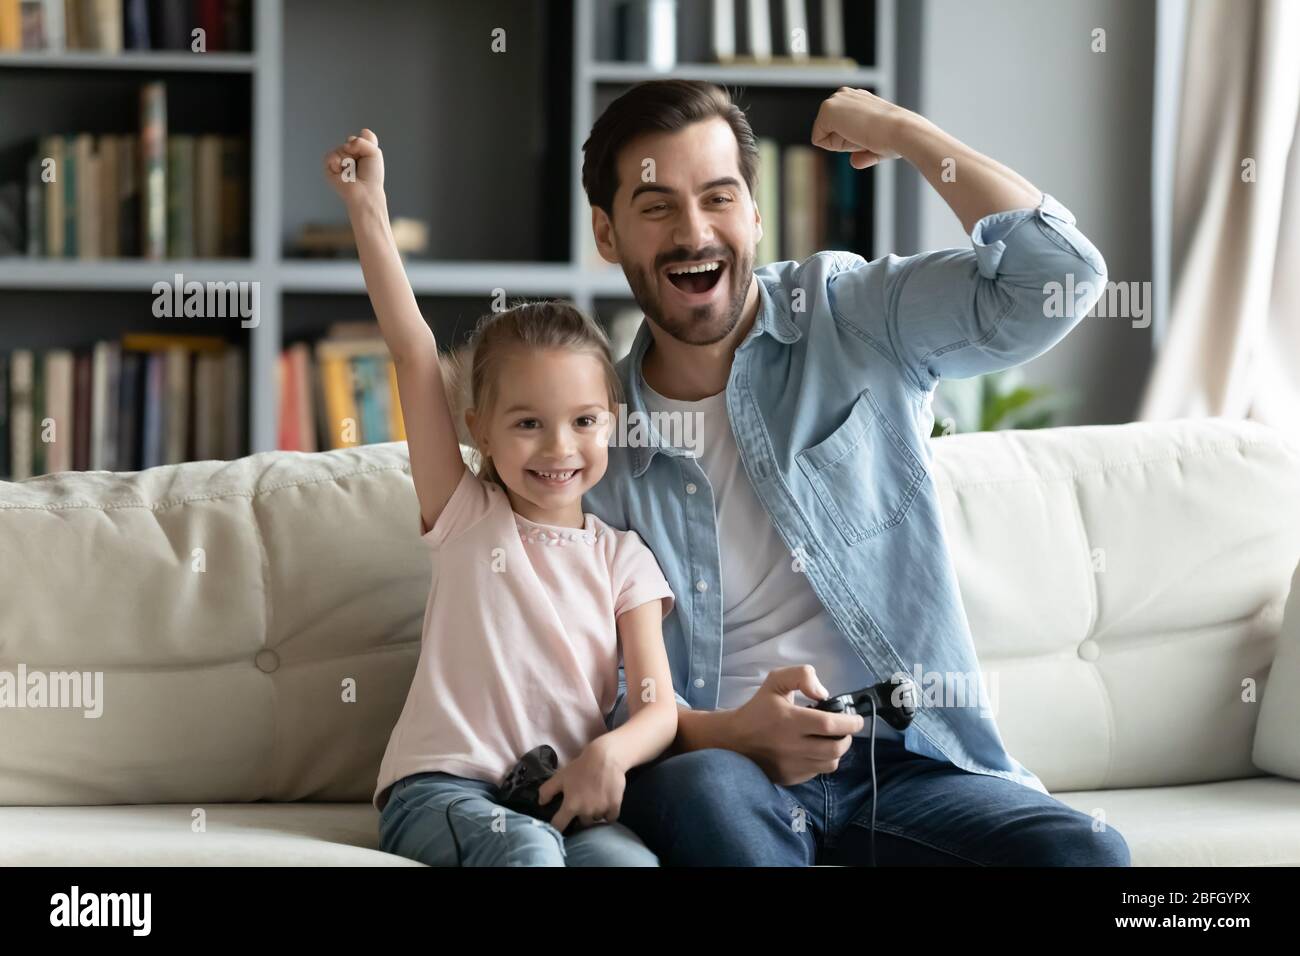 Padre su hija pequeña sostiene joystick jugando playstation celebrar el éxito Foto de stock